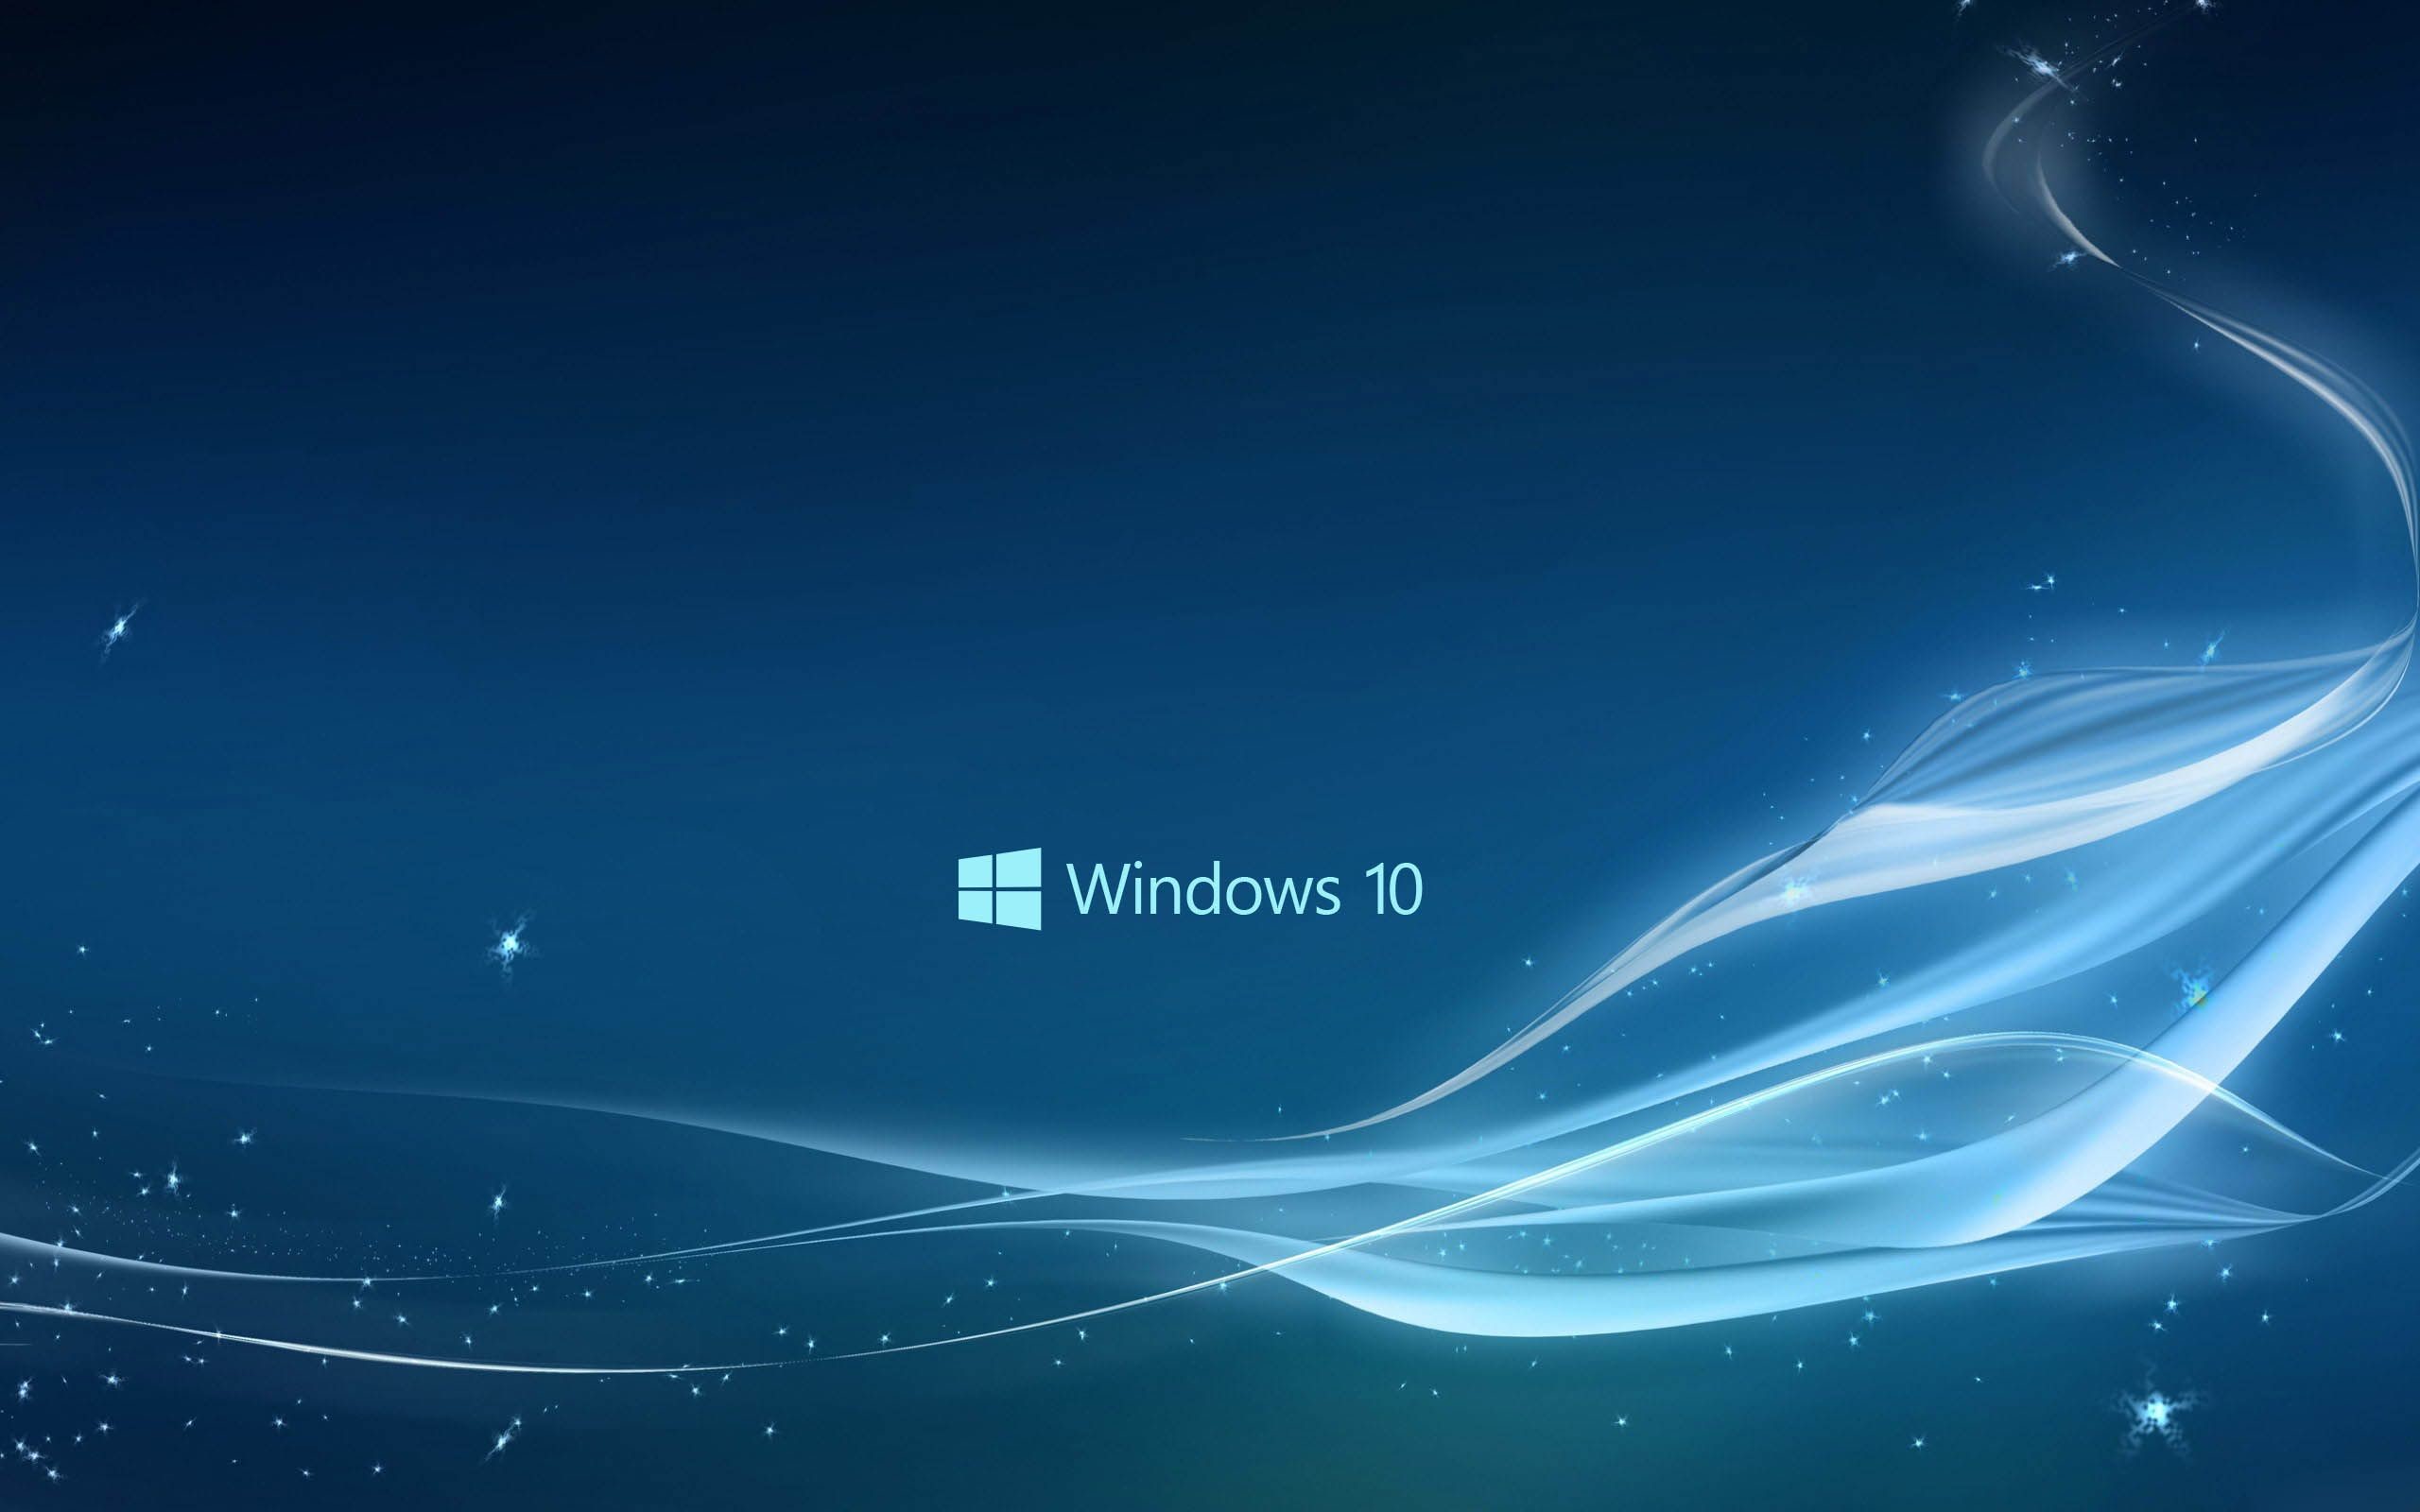 Dell Wallpaper For Windows 10